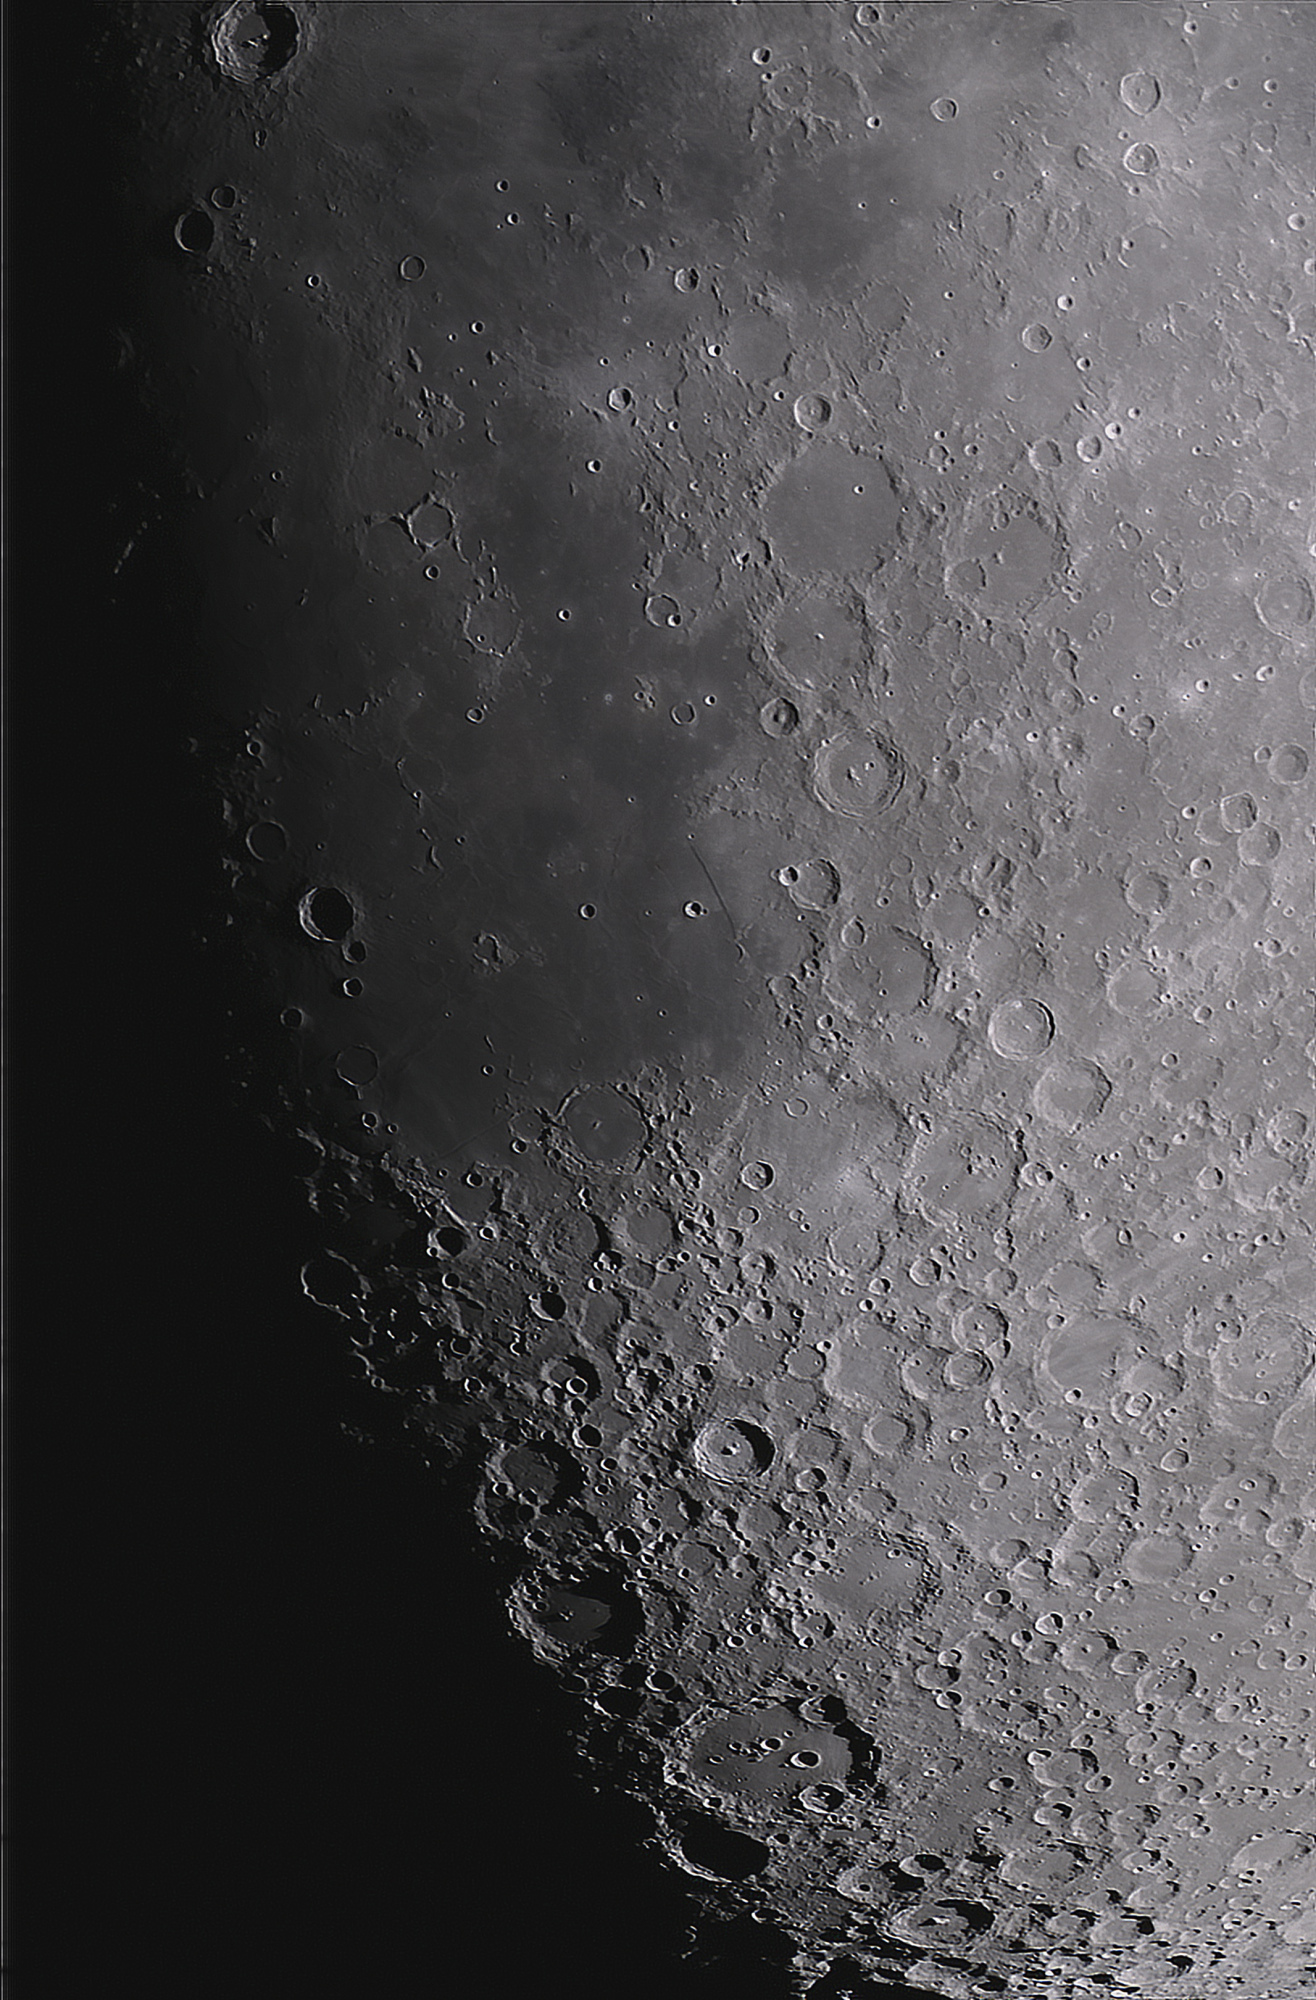 lune1806.thumb.jpg.7003dcbe7dbf498dbd5905d3d4e19dca.jpg